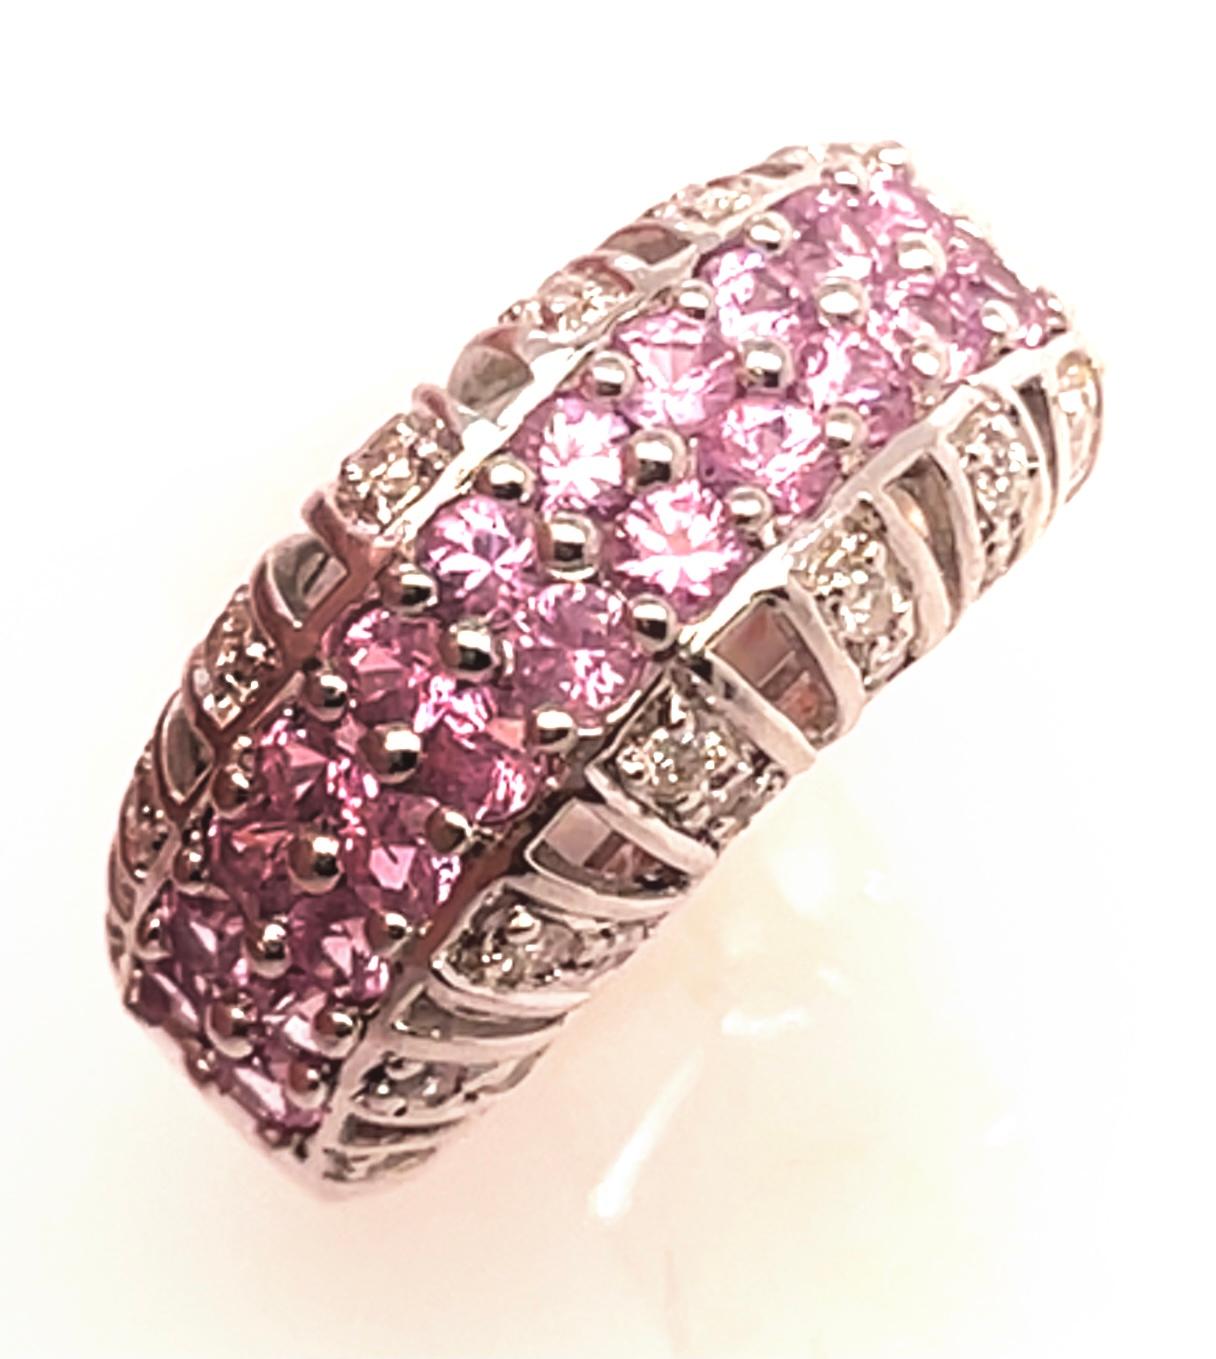 14 Karat Weißgold Kuppel Ring mit rosa Saphiren und Diamanten.
26 runde Diamanten mit einem Gesamtgewicht von 1,00 Diamanten.
24 runde rosa Saphire
Größe 6.5
7.39 Gramm Gesamtgewicht.